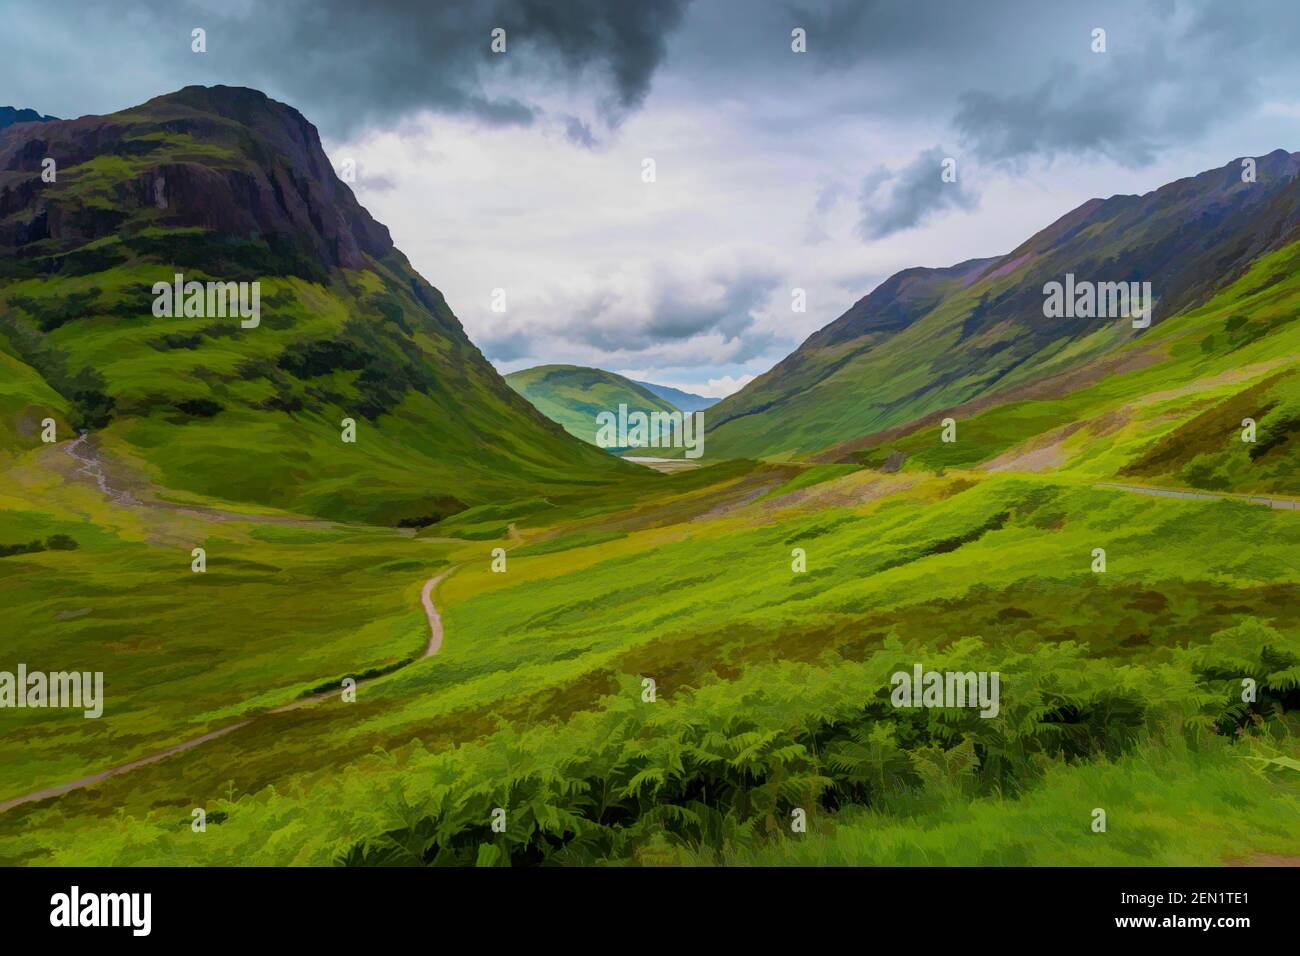 Pintura digital de las montañas de las tres Hermanas, Glencoe, Escocia Foto de stock